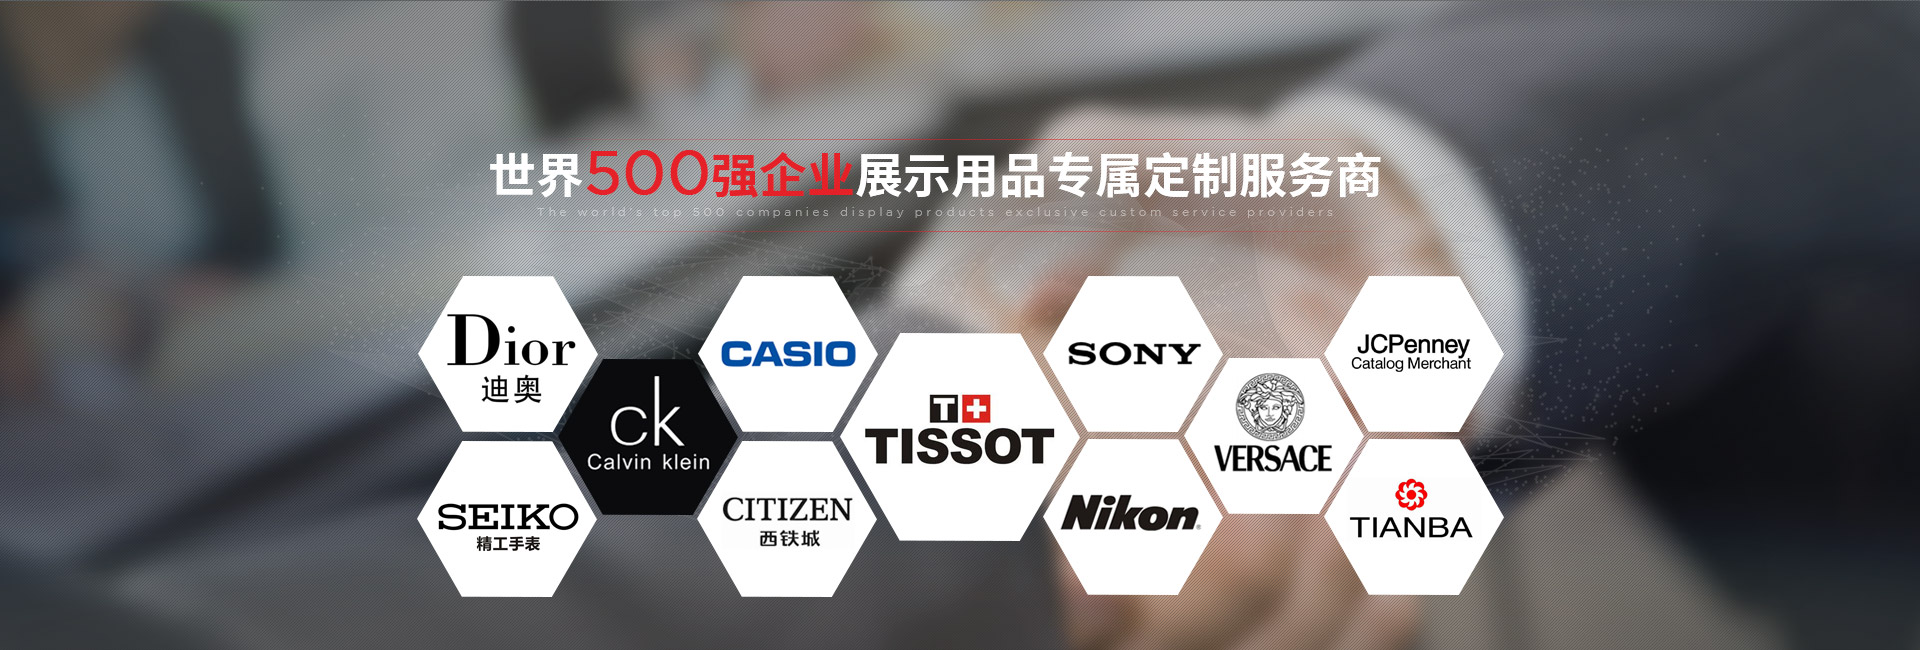 J9九游会-世界500强企业展示用品专属定制服务商